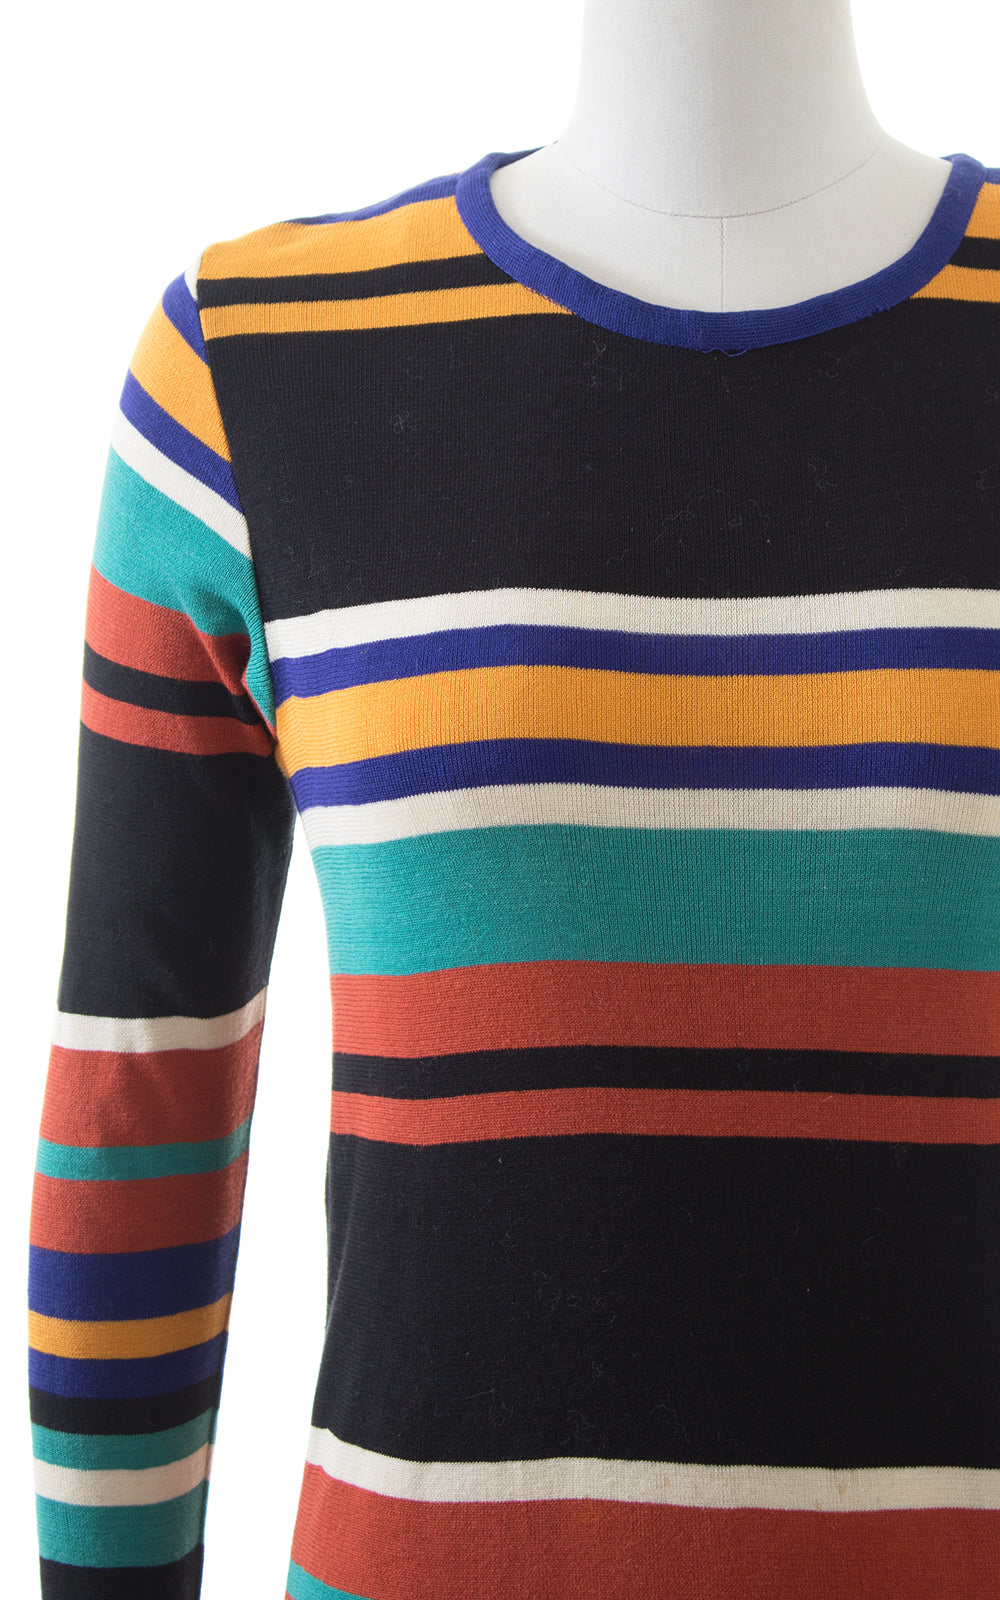 1960s 1970s Missoni Striped Knit Wool Sweater Dress